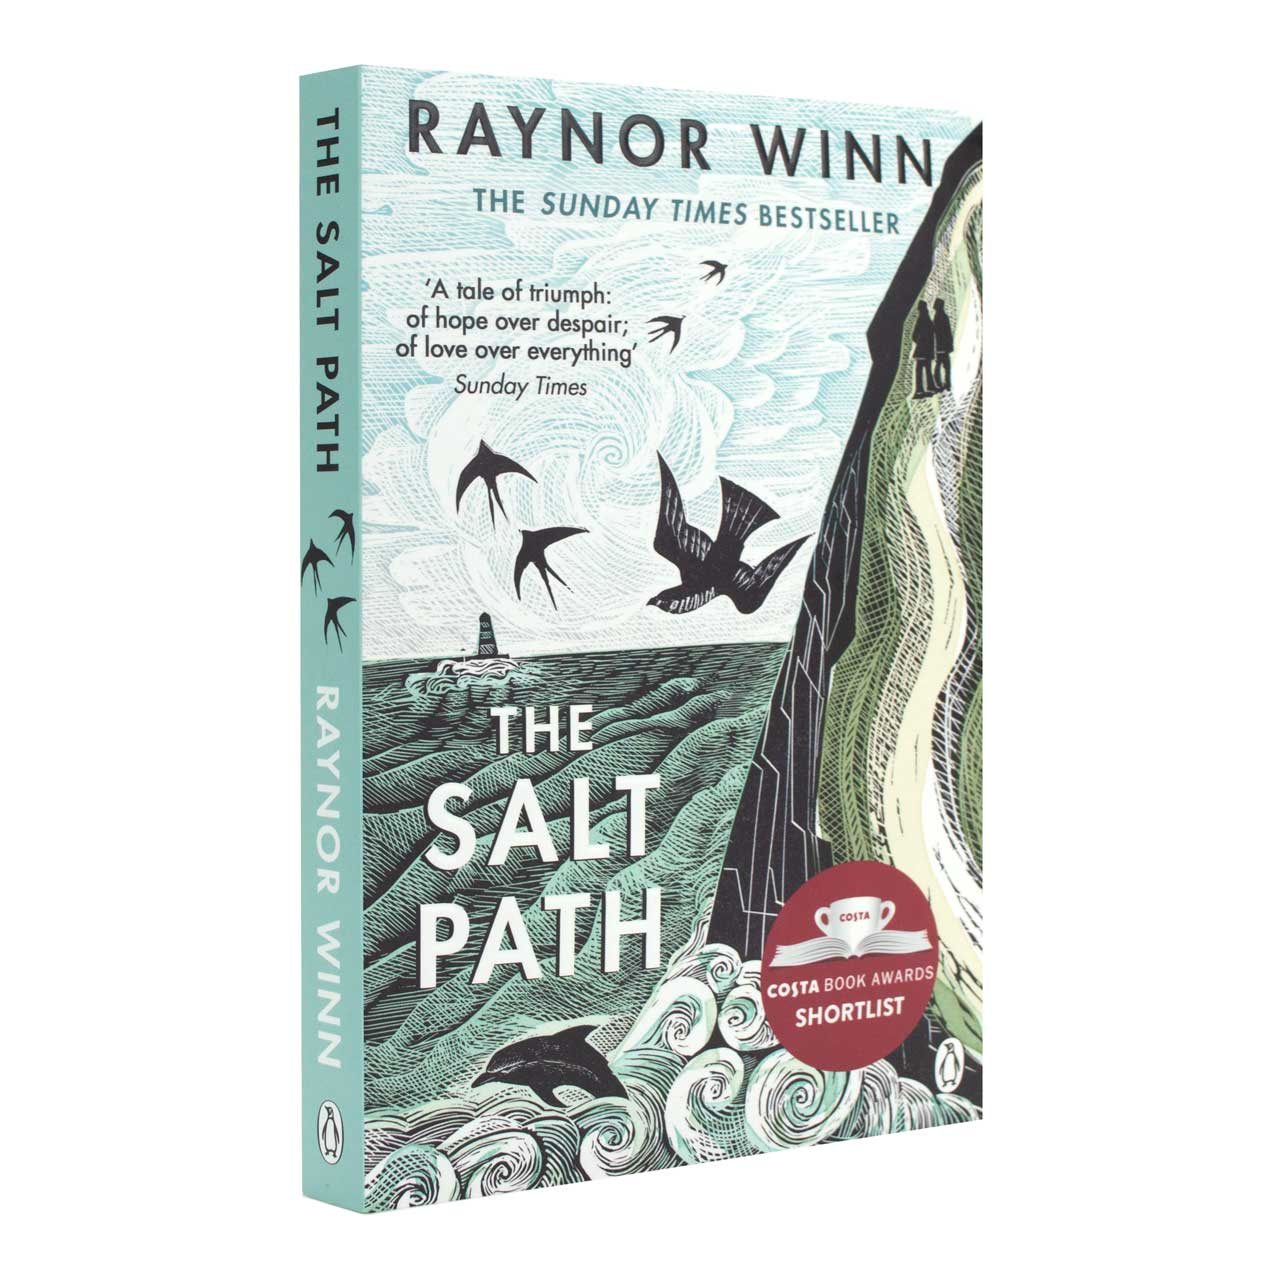 The Salt Path